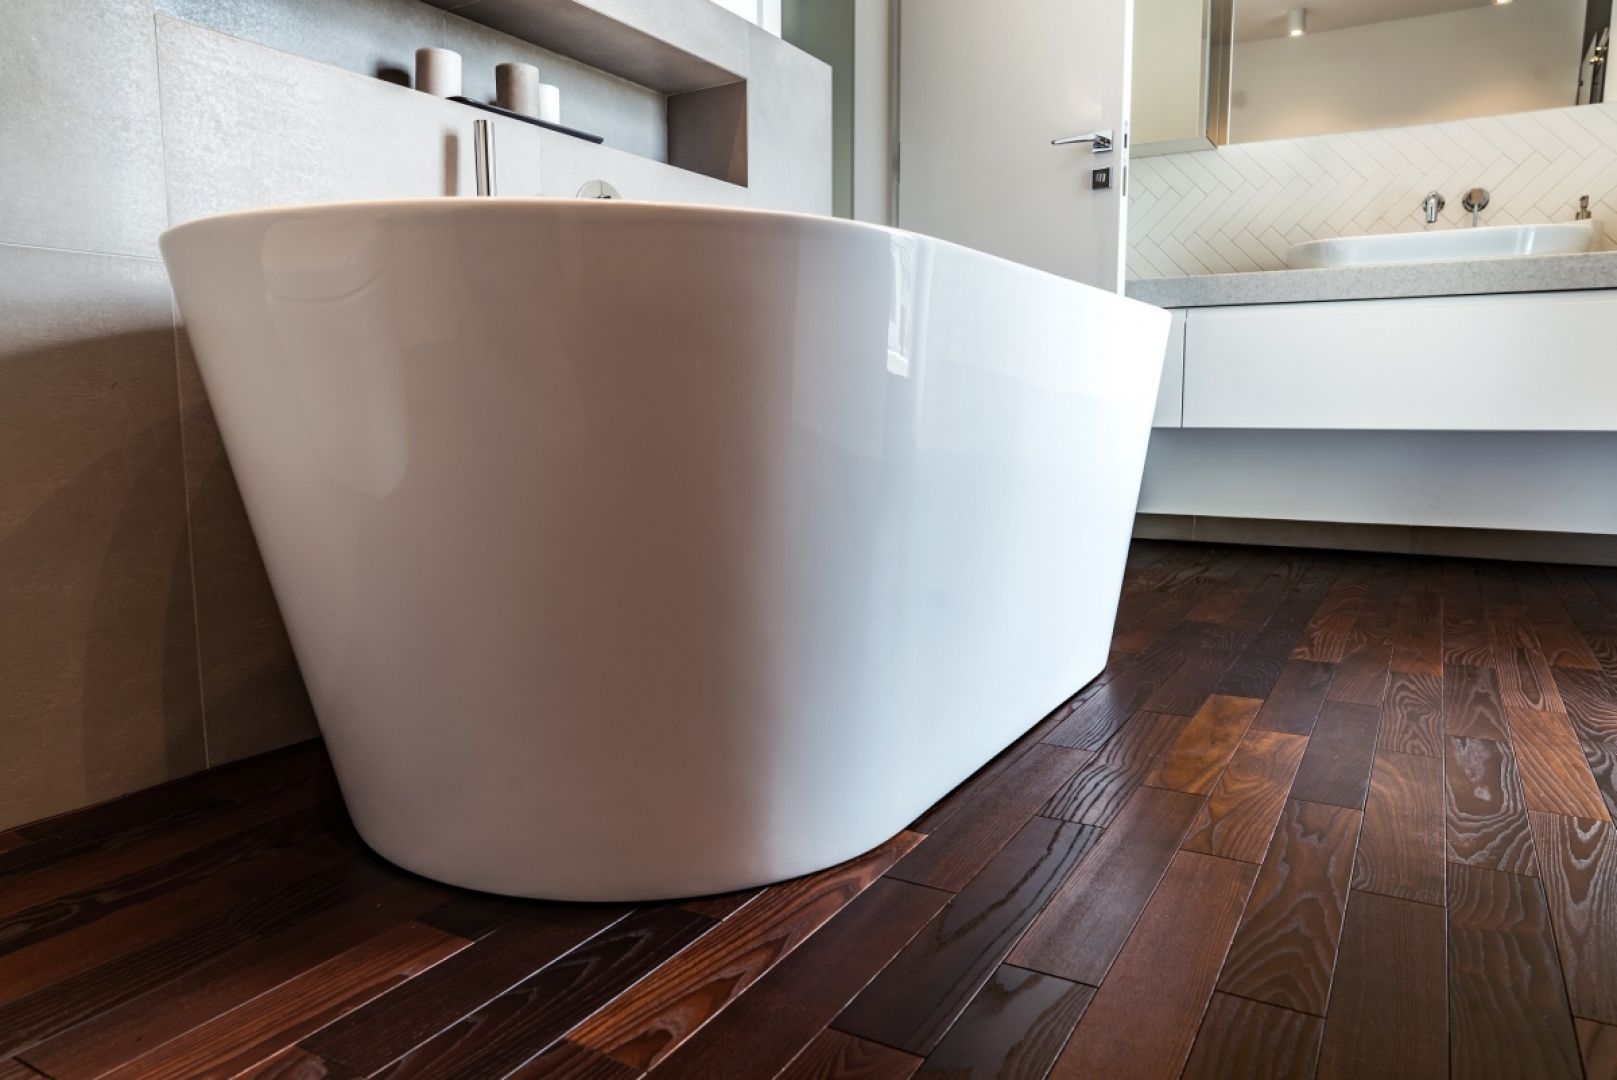 Drewno w łazience to idealna propozycja dla osób, którym zależy na aranżacji przestrzeni w naturalnym stylu, zgodnie z najnowszymi trendami. Fot. Komplex Market